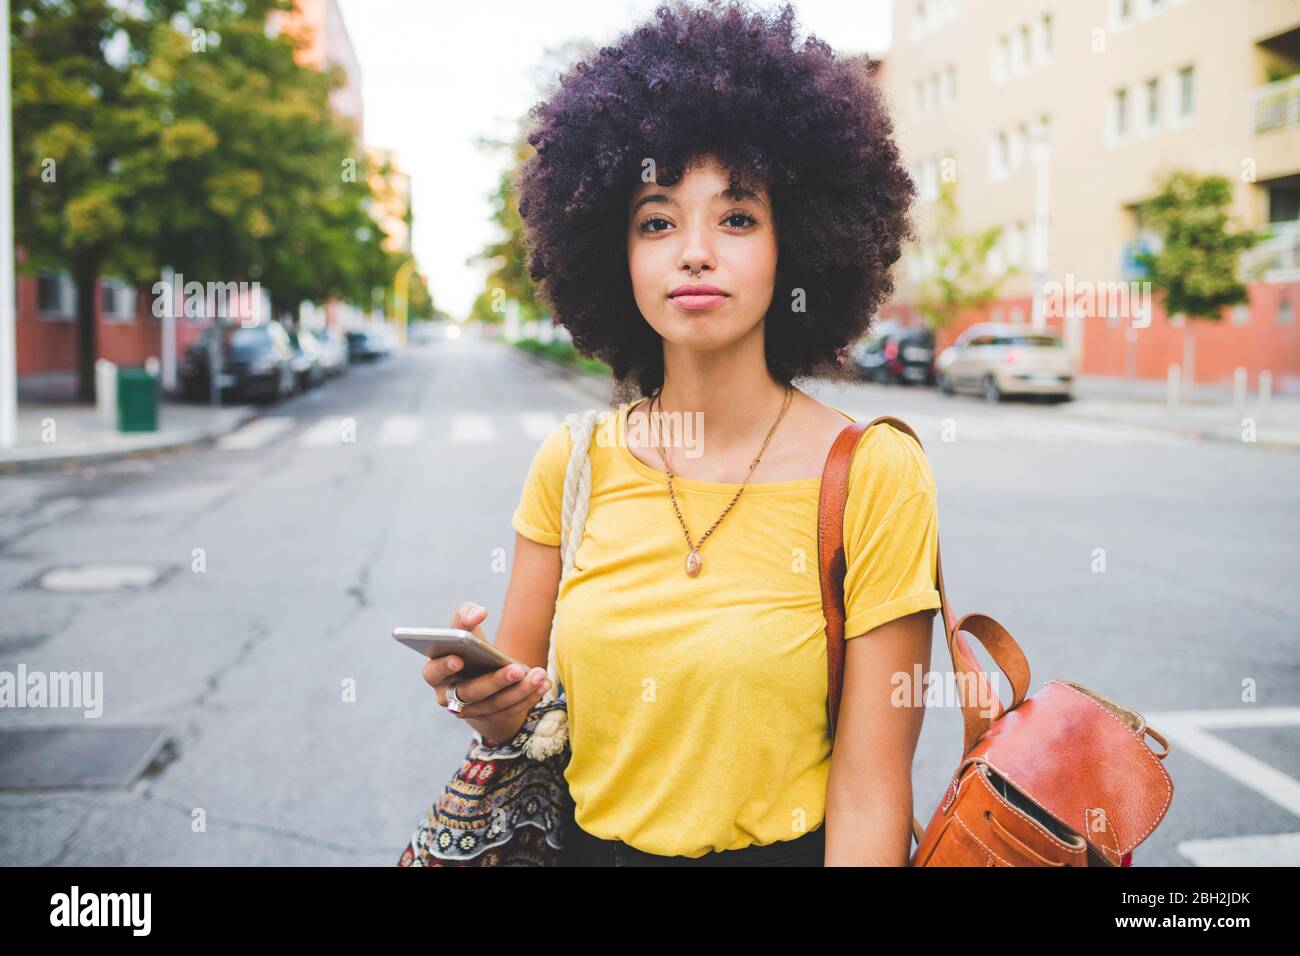 Porträt einer selbstbewussten jungen Frau mit Afro-Frisur in der Stadt Stockfoto